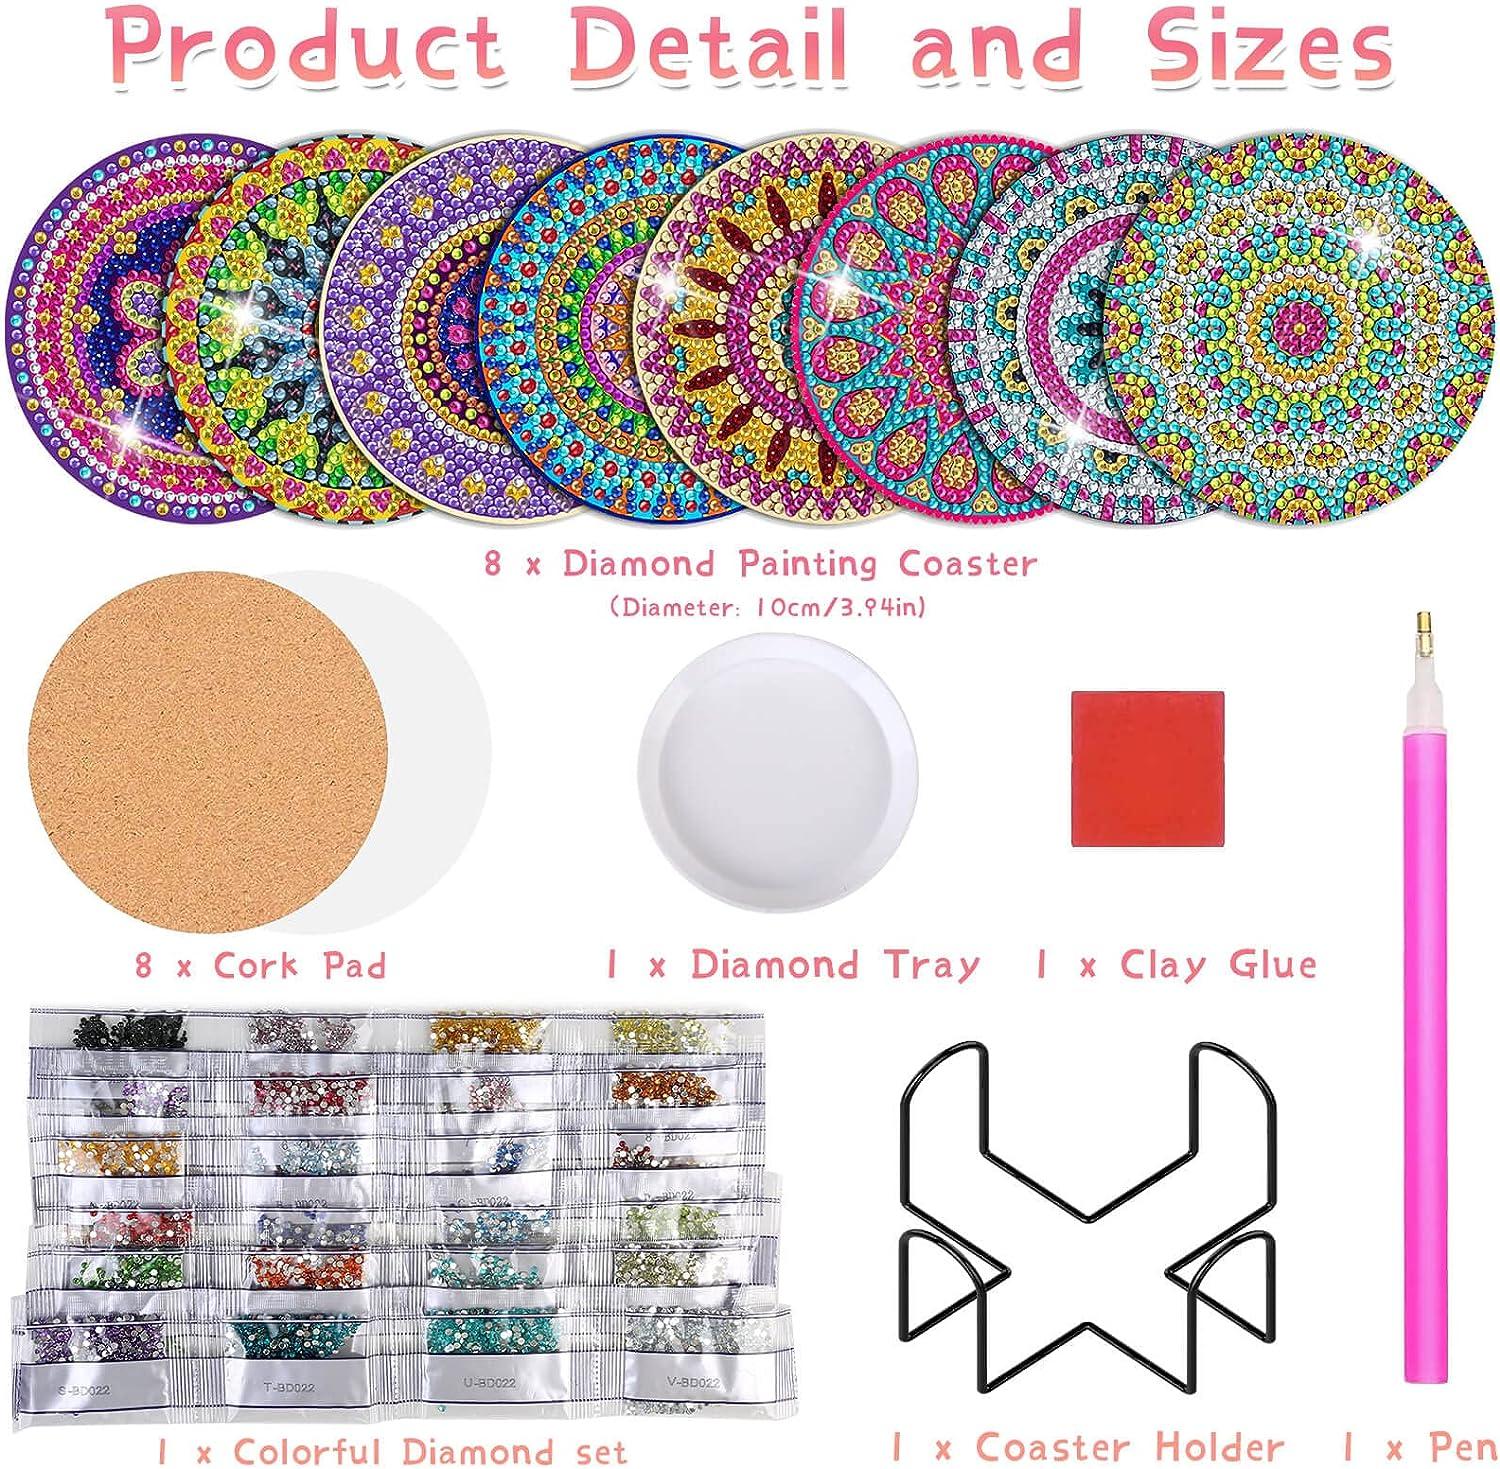  10 Pieces Diamond Painting Coasters Kit Holder Cork